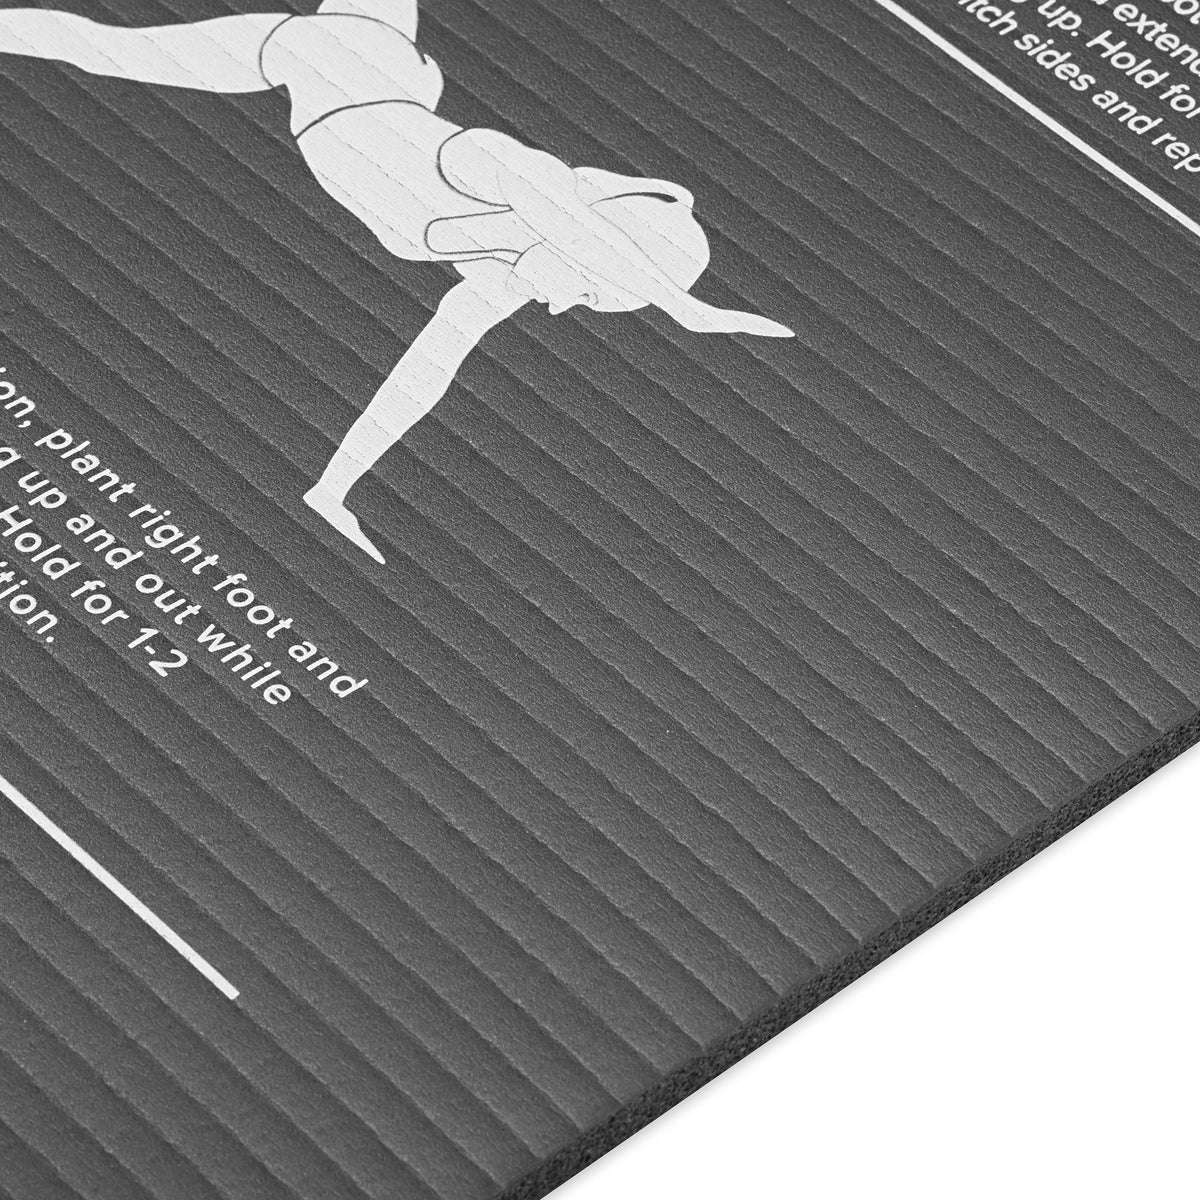 Gaiam Restore Essentials Self-Guided Fitness Mat (10mm) closeup